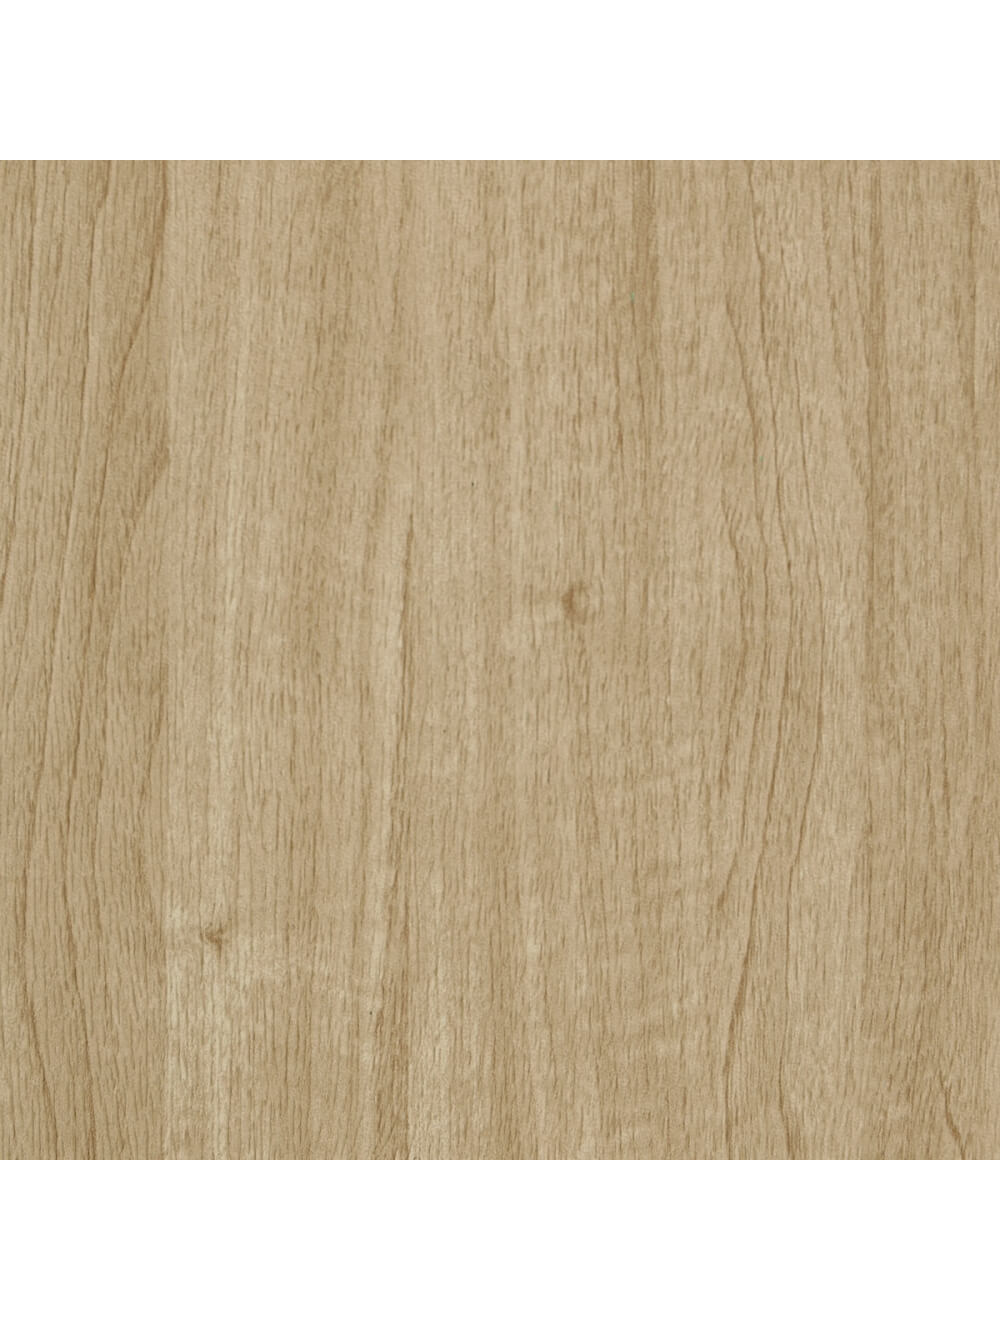 Δείγμα υλικού κόκκων από φυσικό ξύλο Ουάσιγκτον (E936)